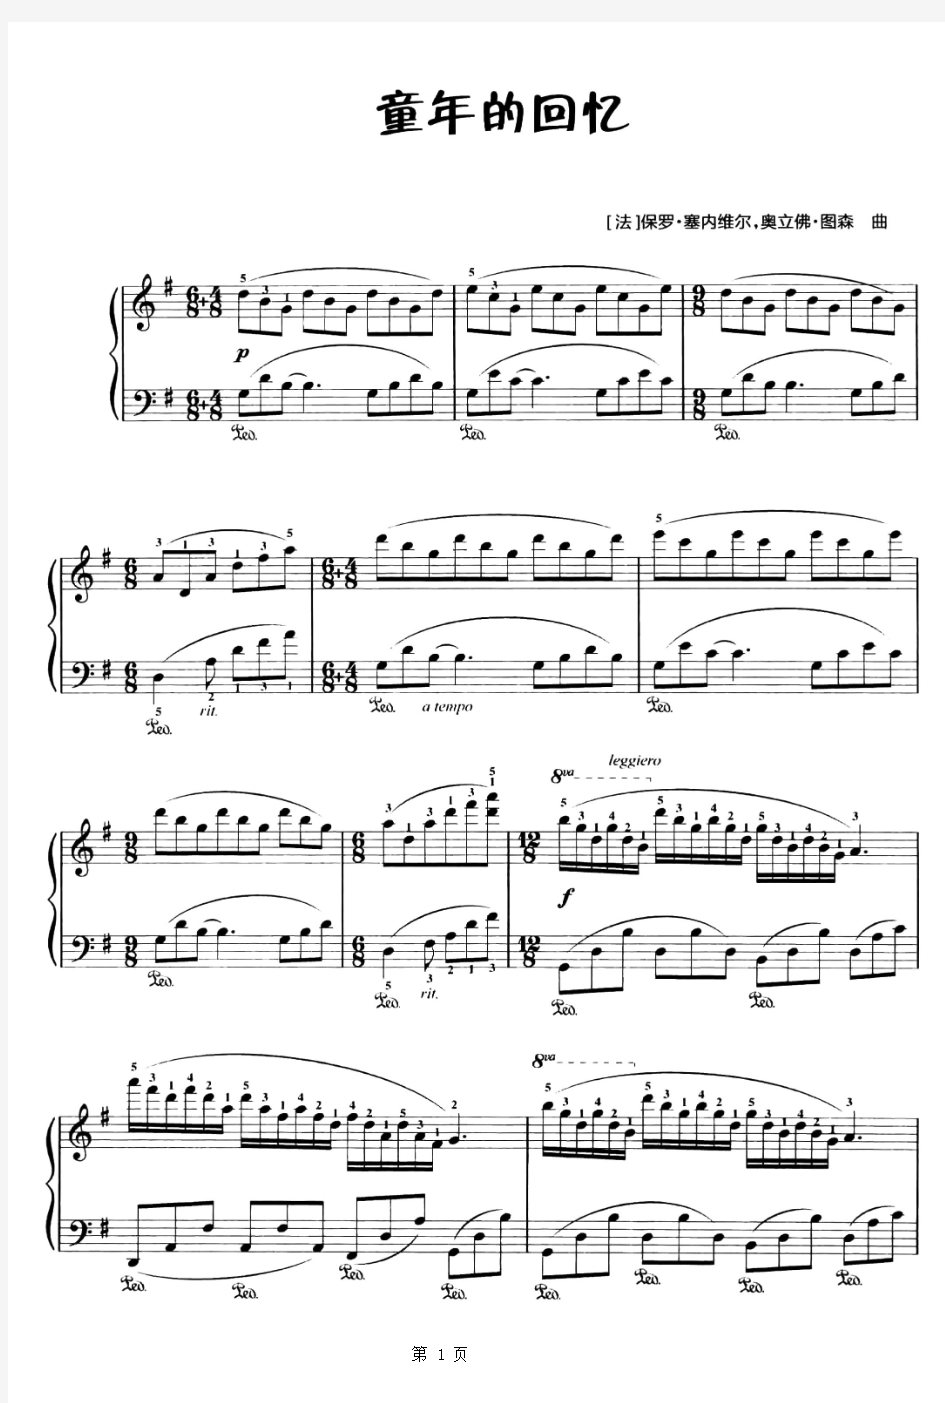 11423理查德克莱德曼爱的纪念童年的回忆钢琴谱带指法原曲版-4页